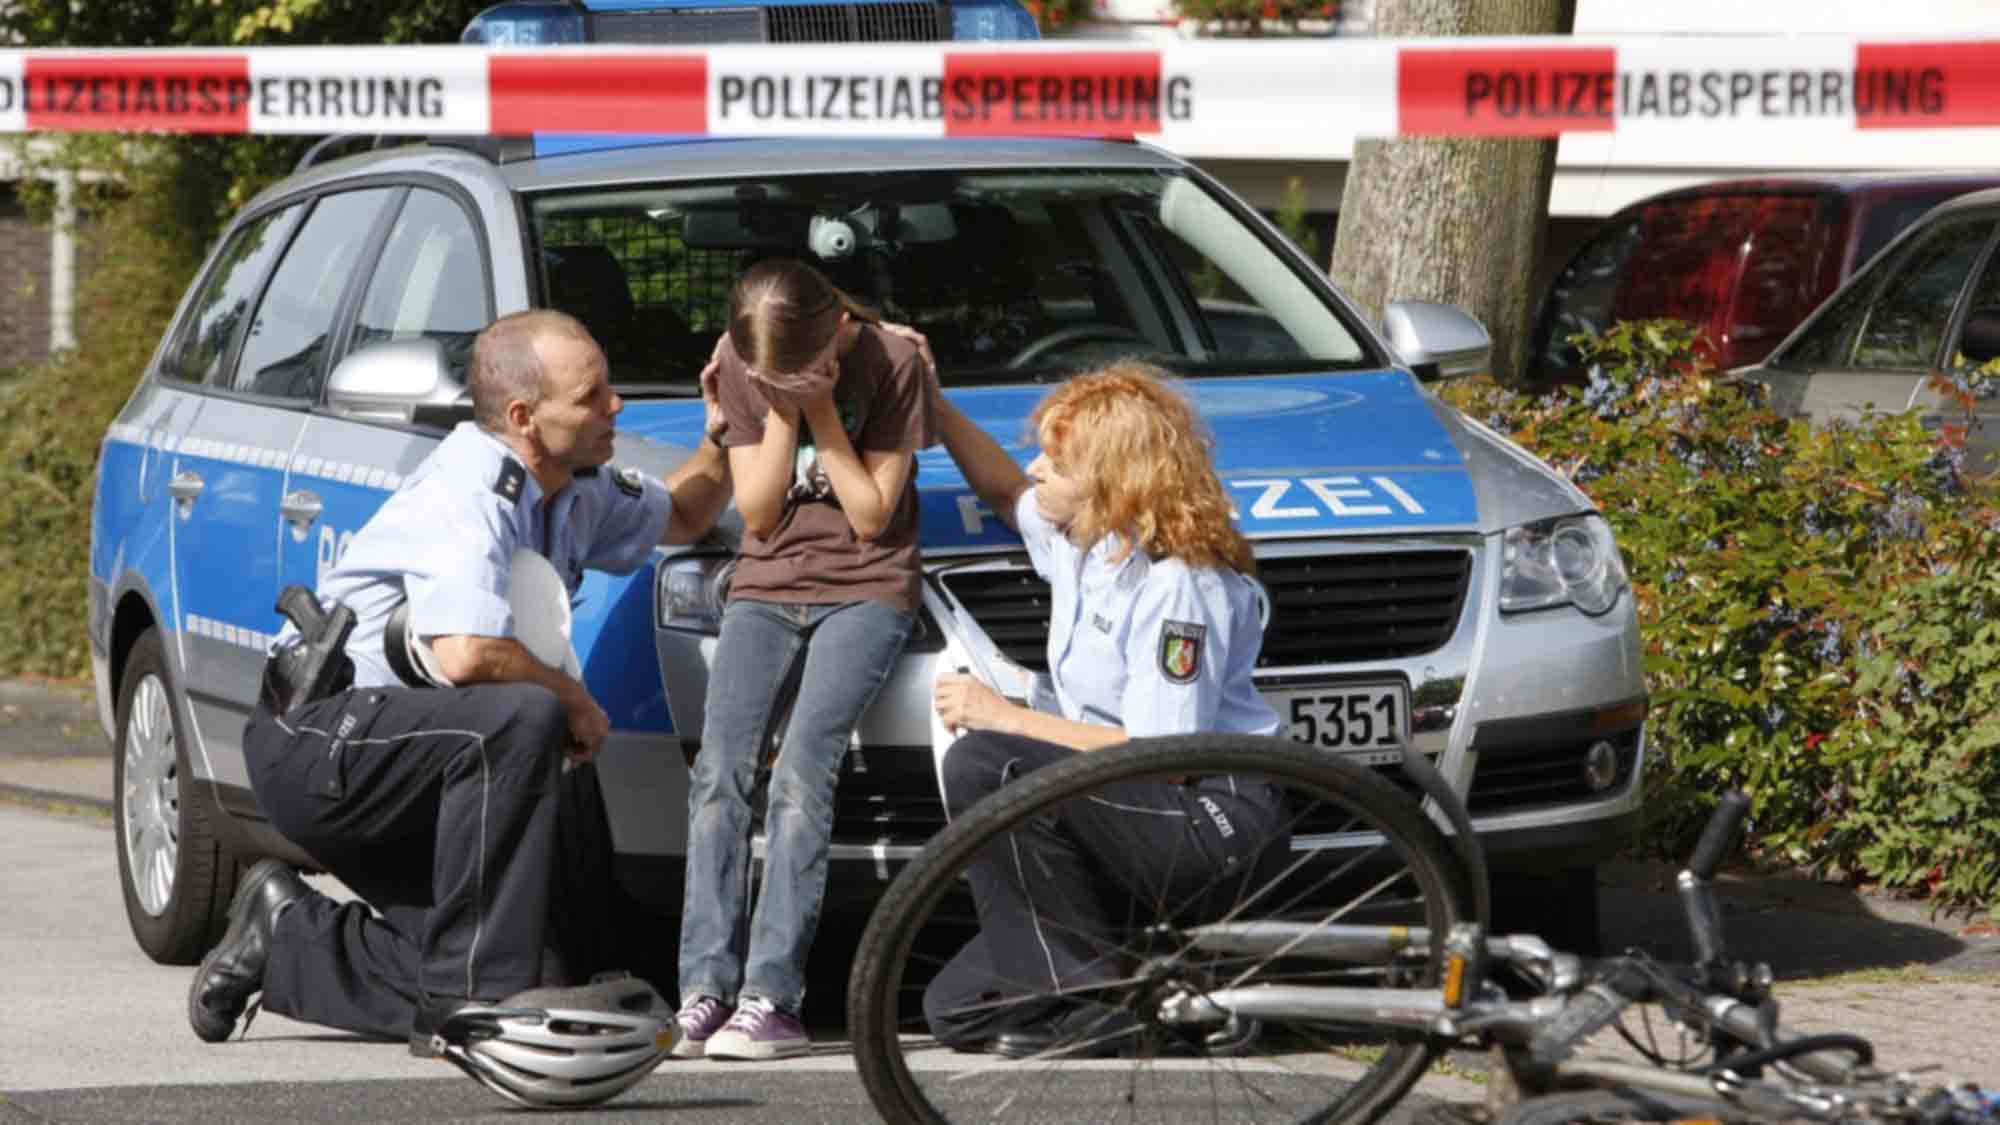 Polizei Bielefeld: Warum reicht fragen alleine nicht aus?